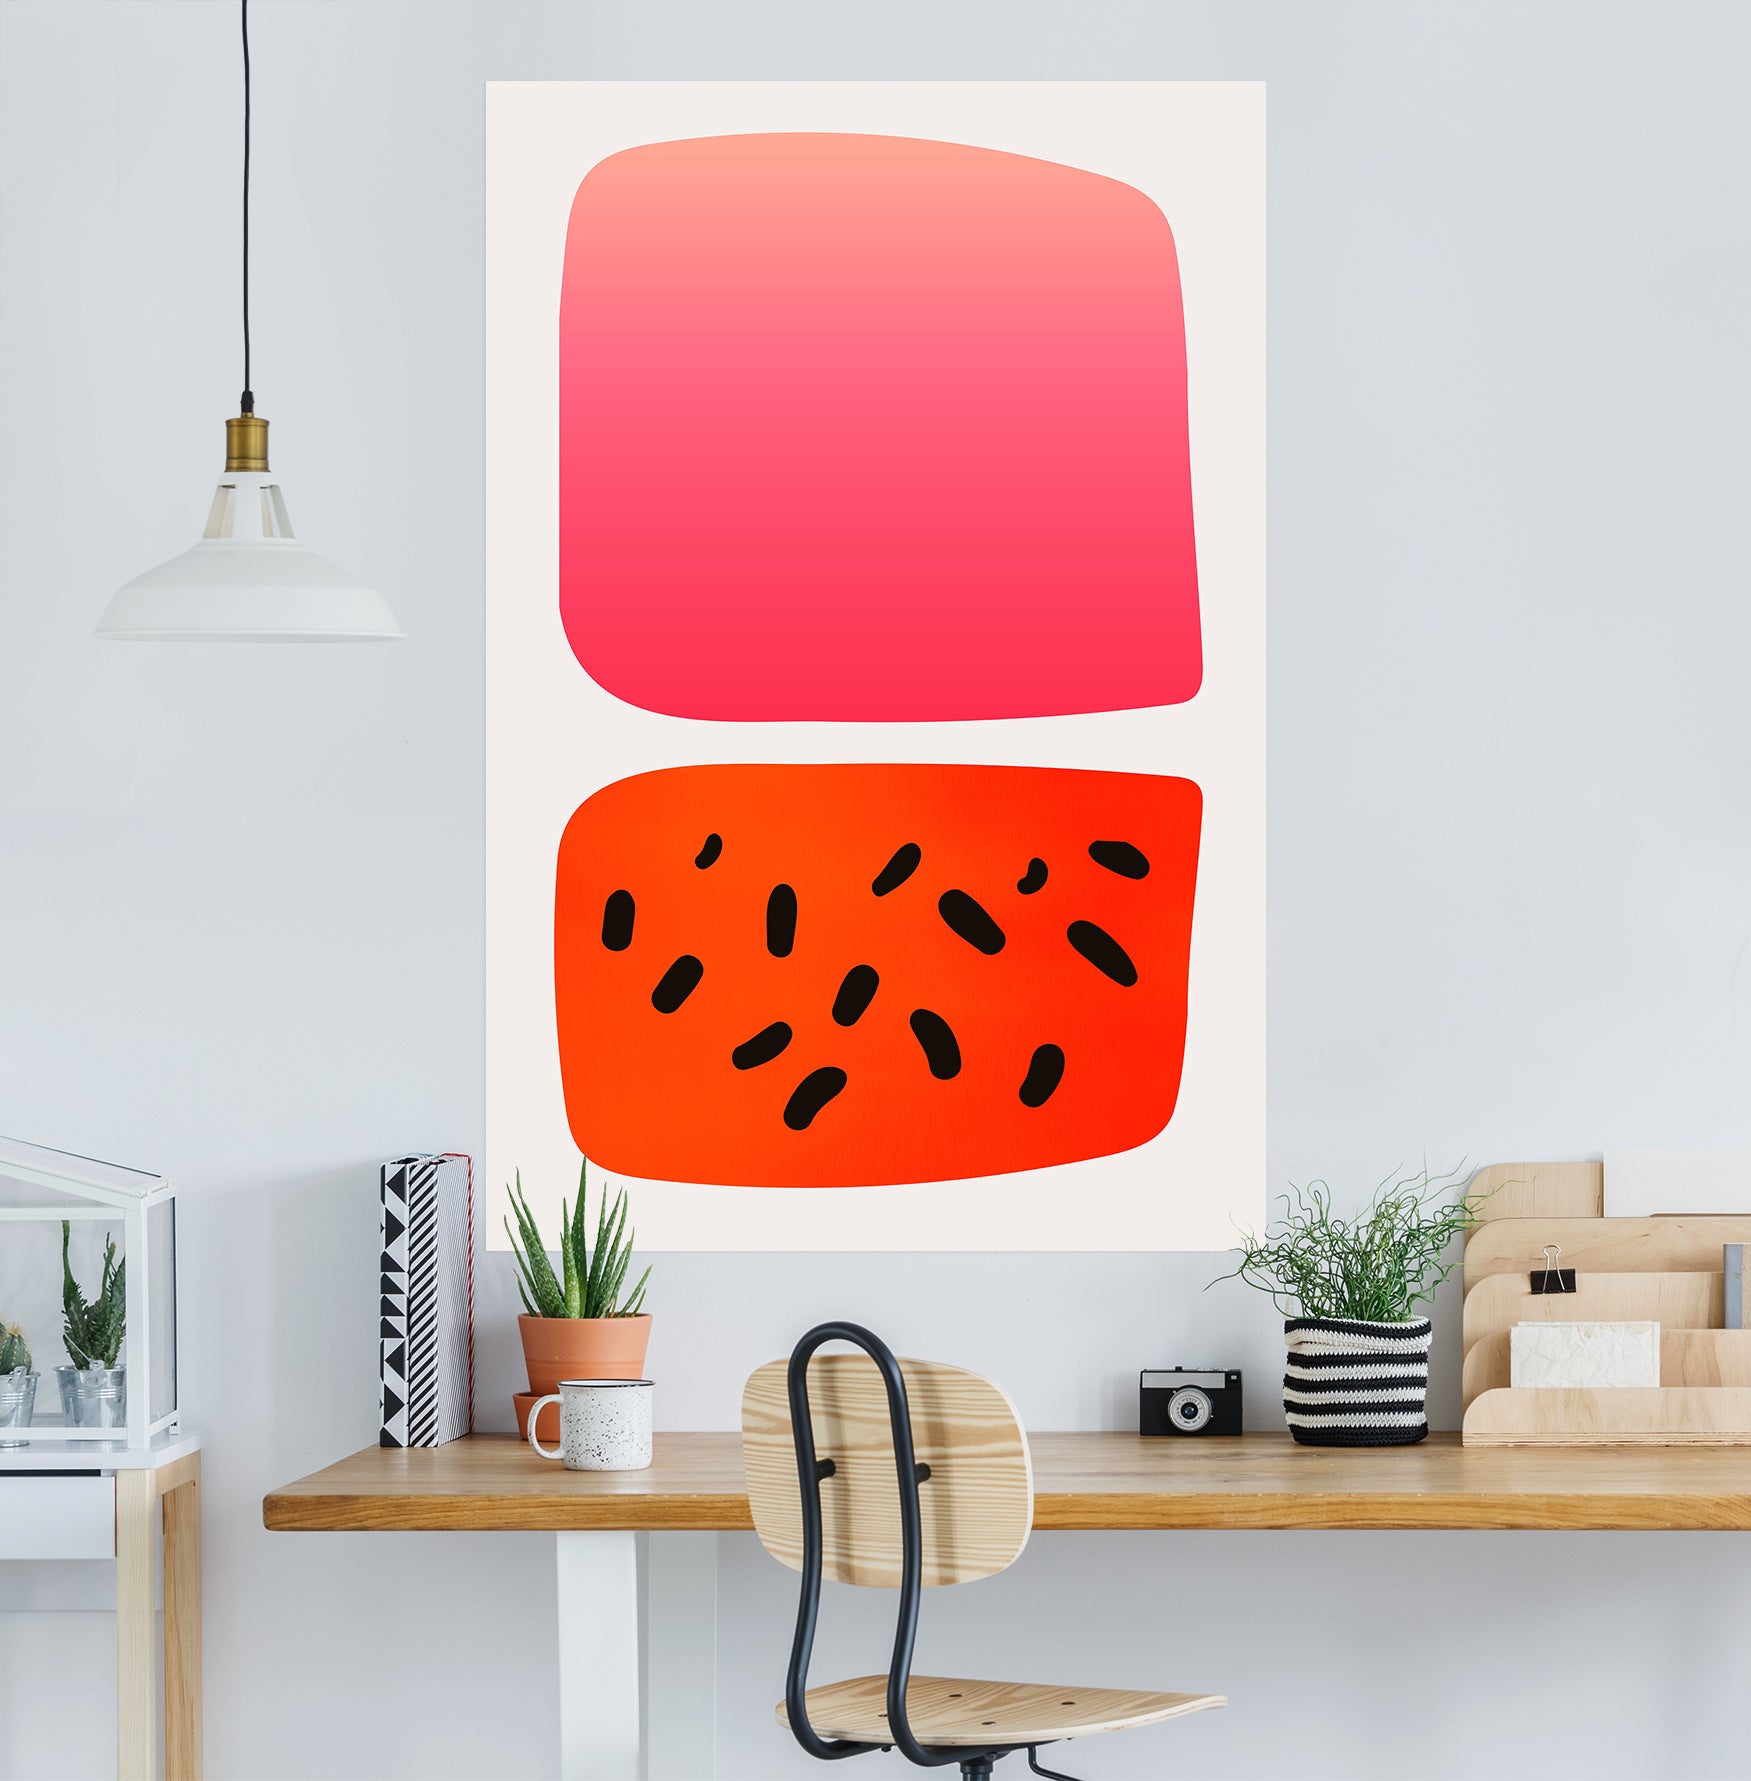 3D Abstract Watermelon 106 Boris Draschoff Wall Sticker